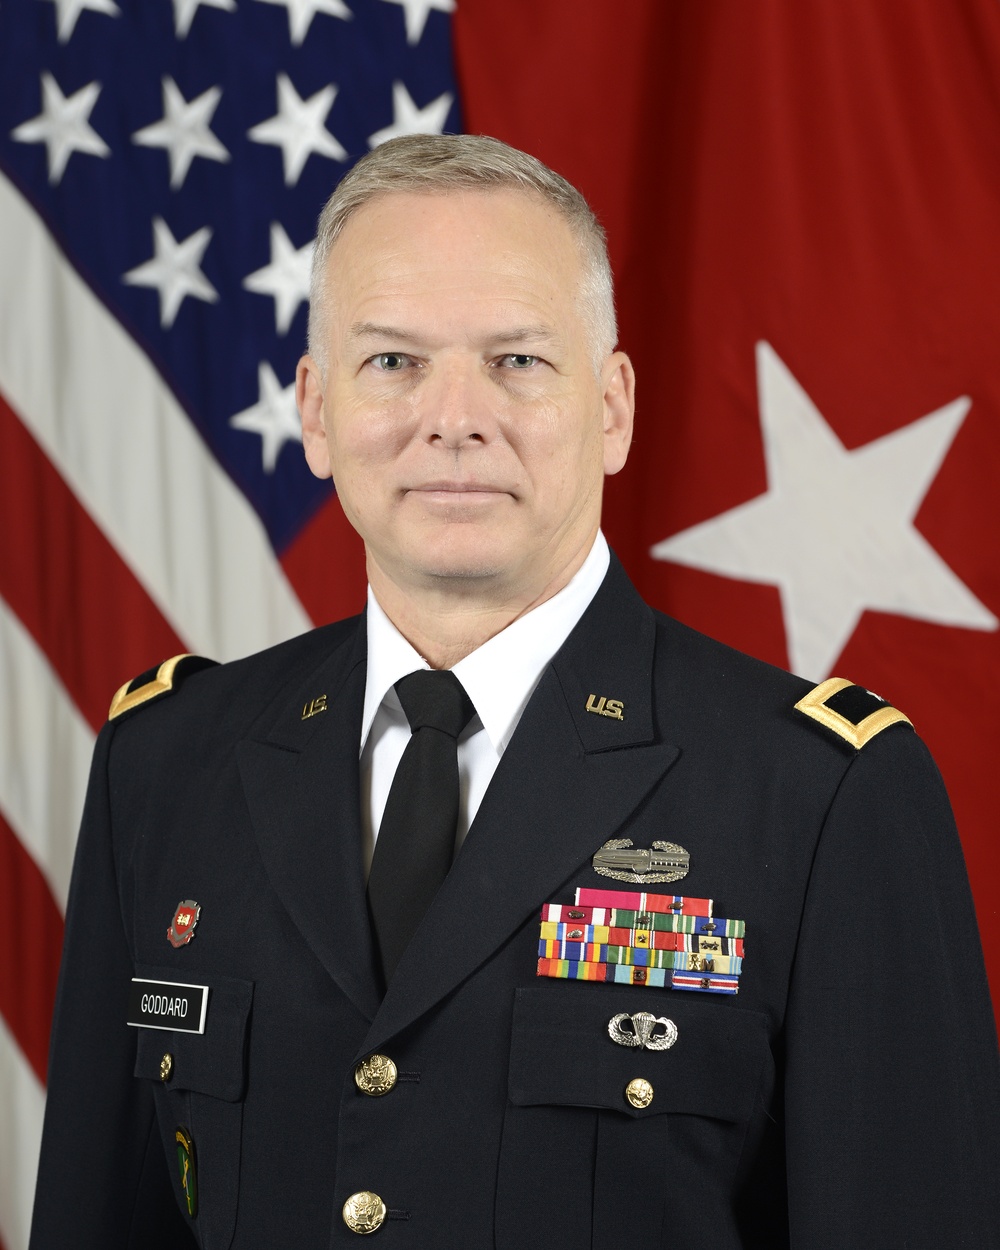 U.S. Army Brig. Gen. Glenn Goddard